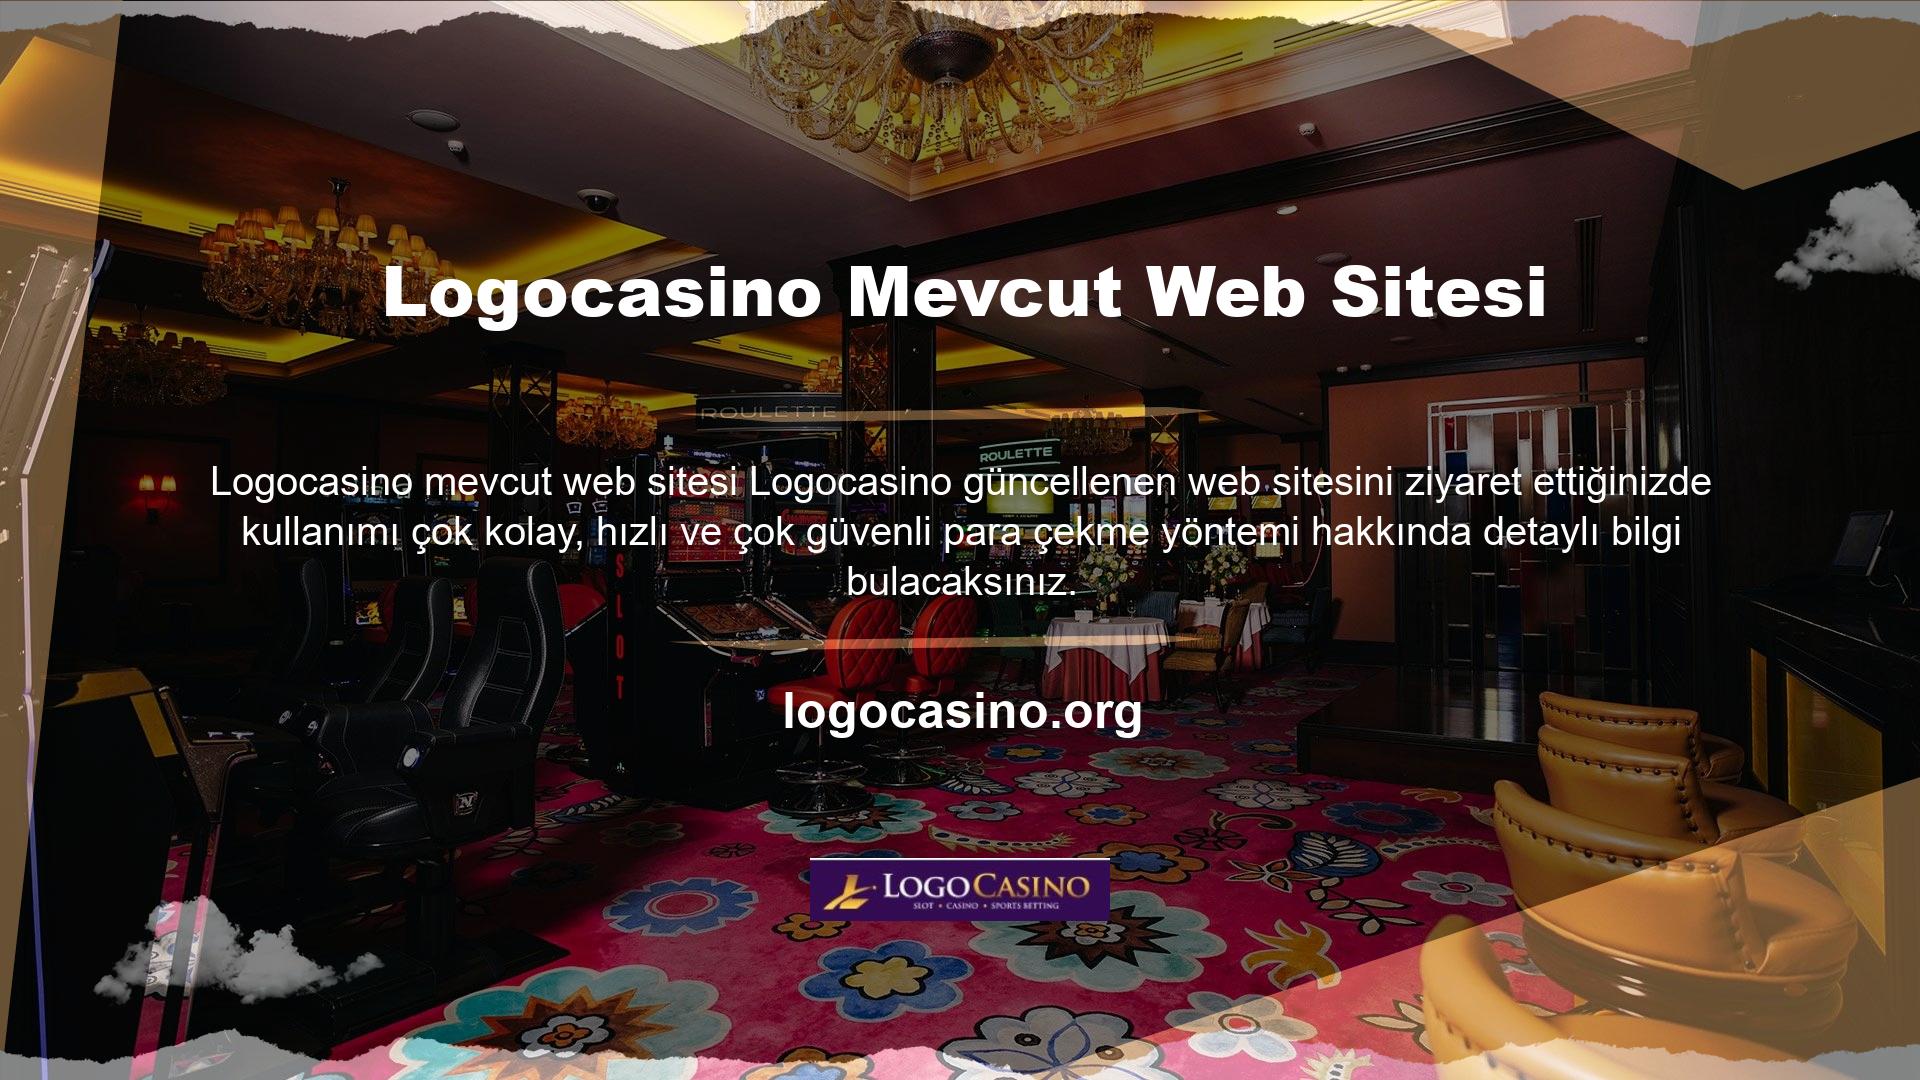 Müşteriler Logocasino kolayca yatırım yapmanın rahatlığıyla ticaret yapar ve yatırımları anında hesaplarına aktarılır, böylece zengin bahis ve casino seçenekleriyle eğlencelerini ve ticaretlerini en üst düzeye çıkarabilirler